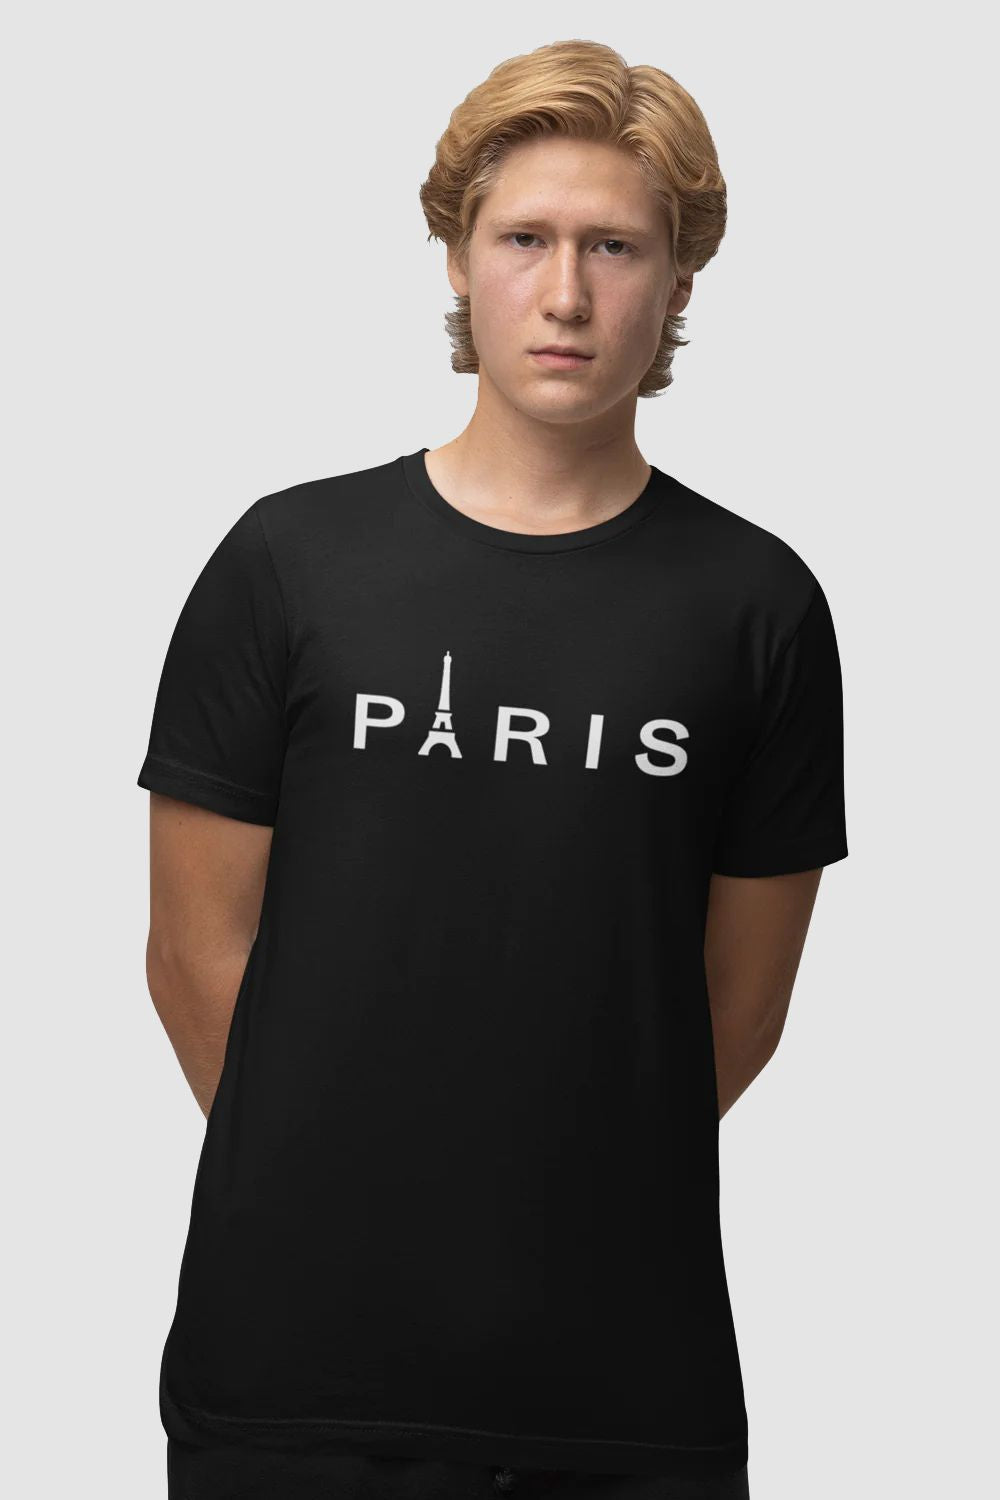 Paris Graphic Printed Black Tshirt